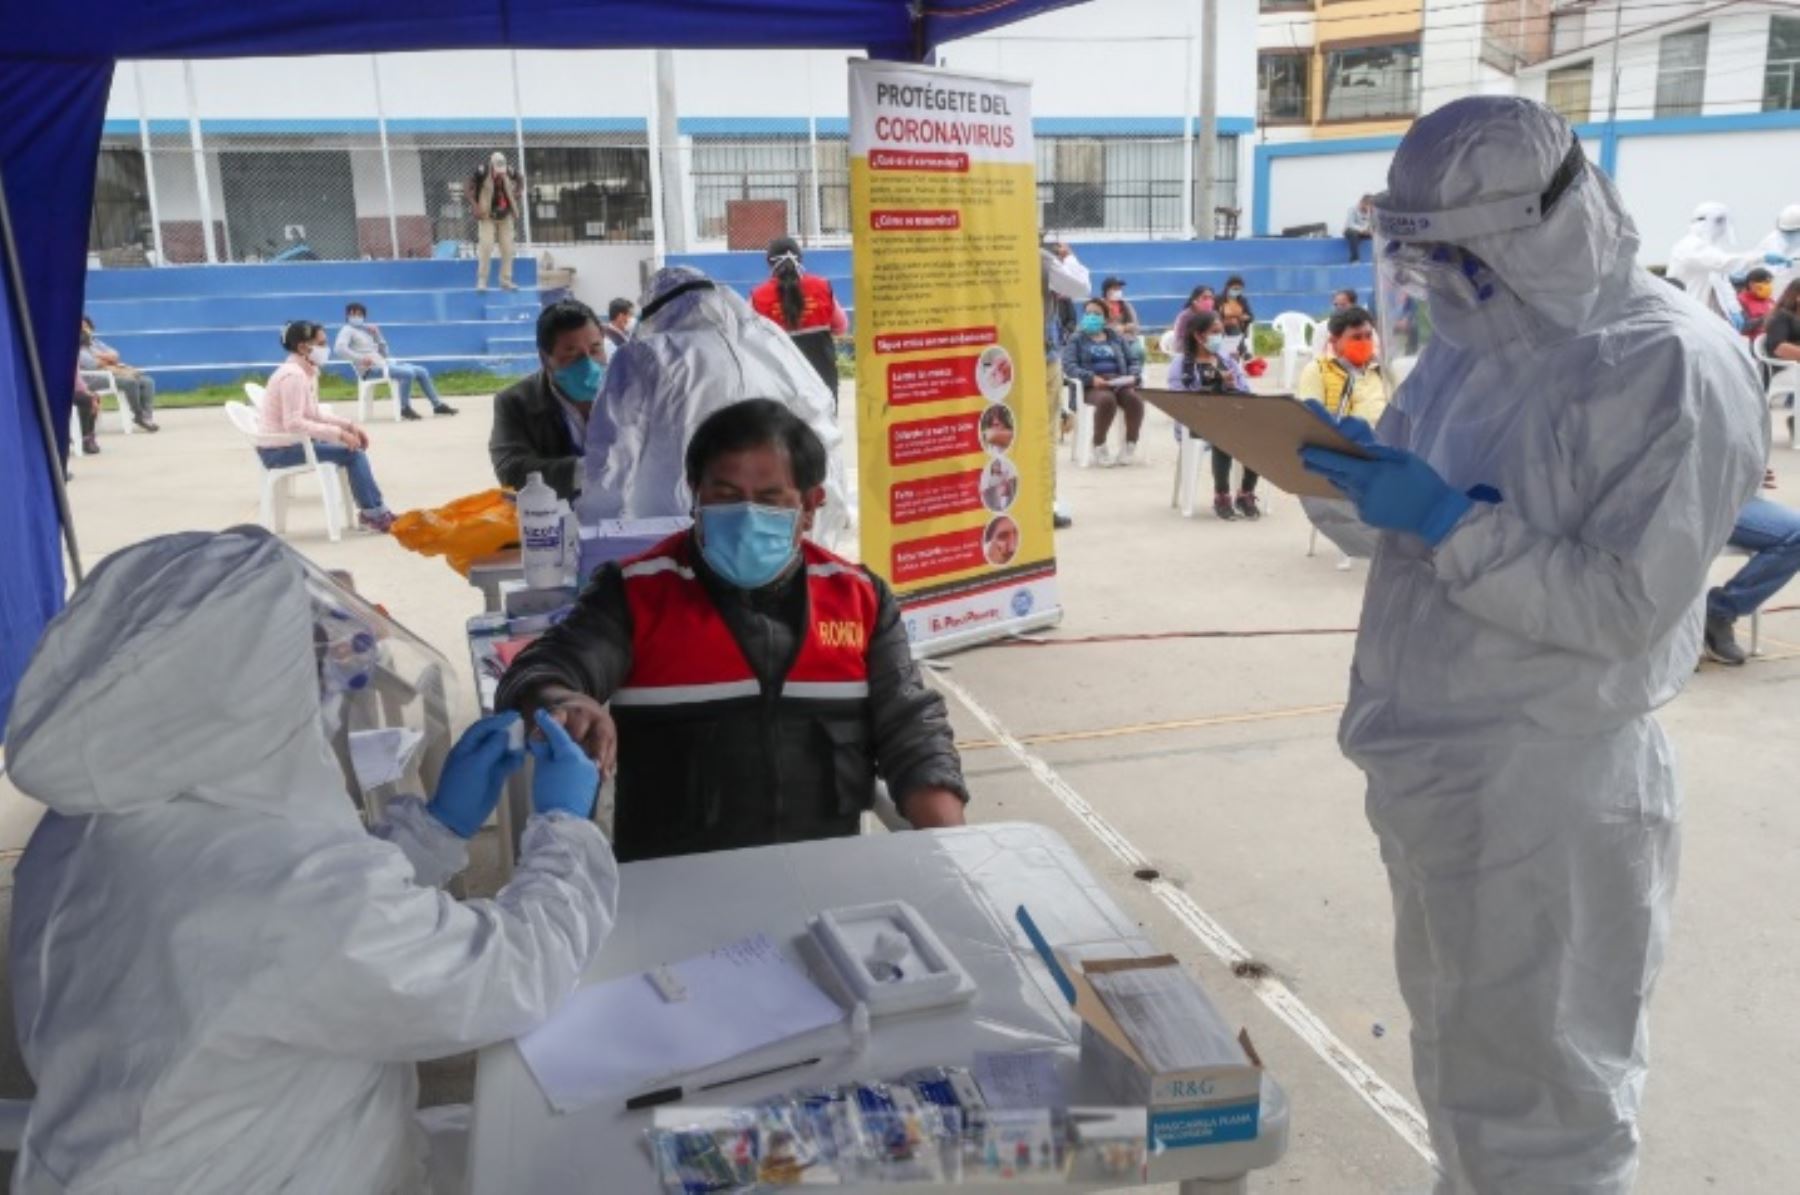 El ministro de Defensa, Walter Martos Ruíz, llegó hoy a Cajamarca trasladando más de 8 toneladas de insumos médicos para combatir el coronavirus, y constató con gran satisfacción que luego de aplicarse pruebas rápidas a 91 comerciantes y ronderos de la región, el 100% resultó negativo al covid-19.